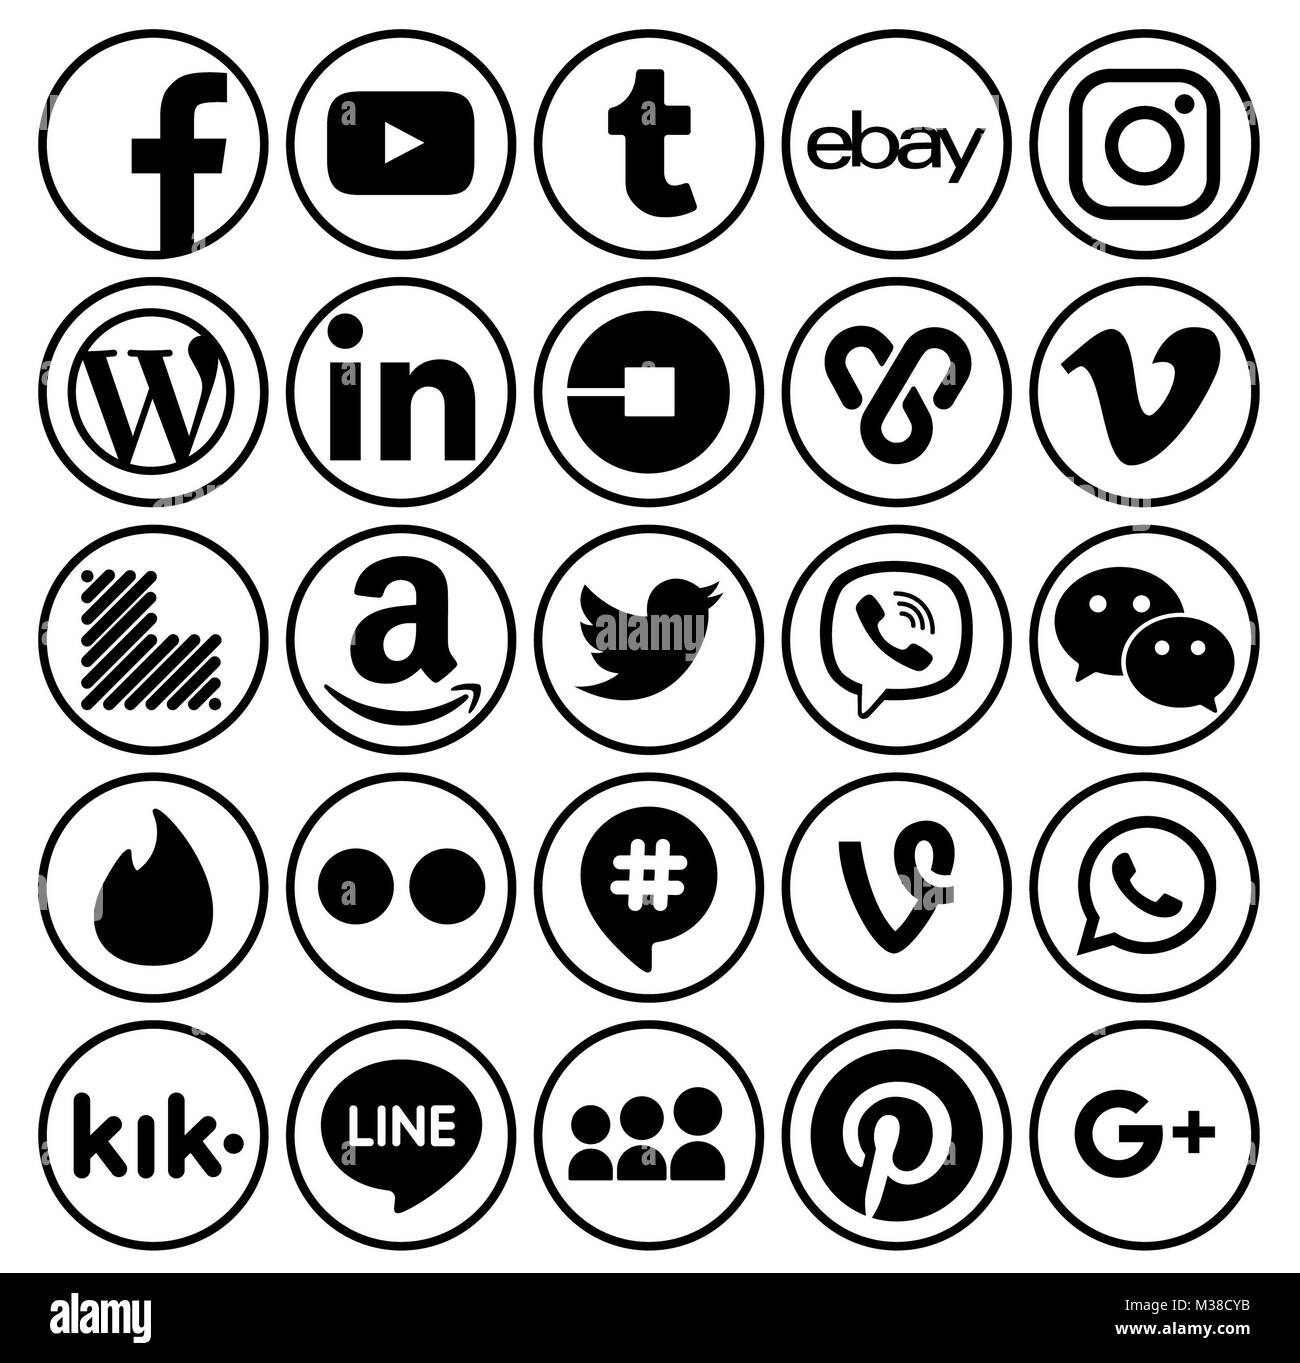 Kiev, Ucraina - 11 Settembre 2017: Raccolta di popolari tondo nero social media icone, stampato su carta: Facebook, Twitter, Google Plus, Instagram, Foto Stock